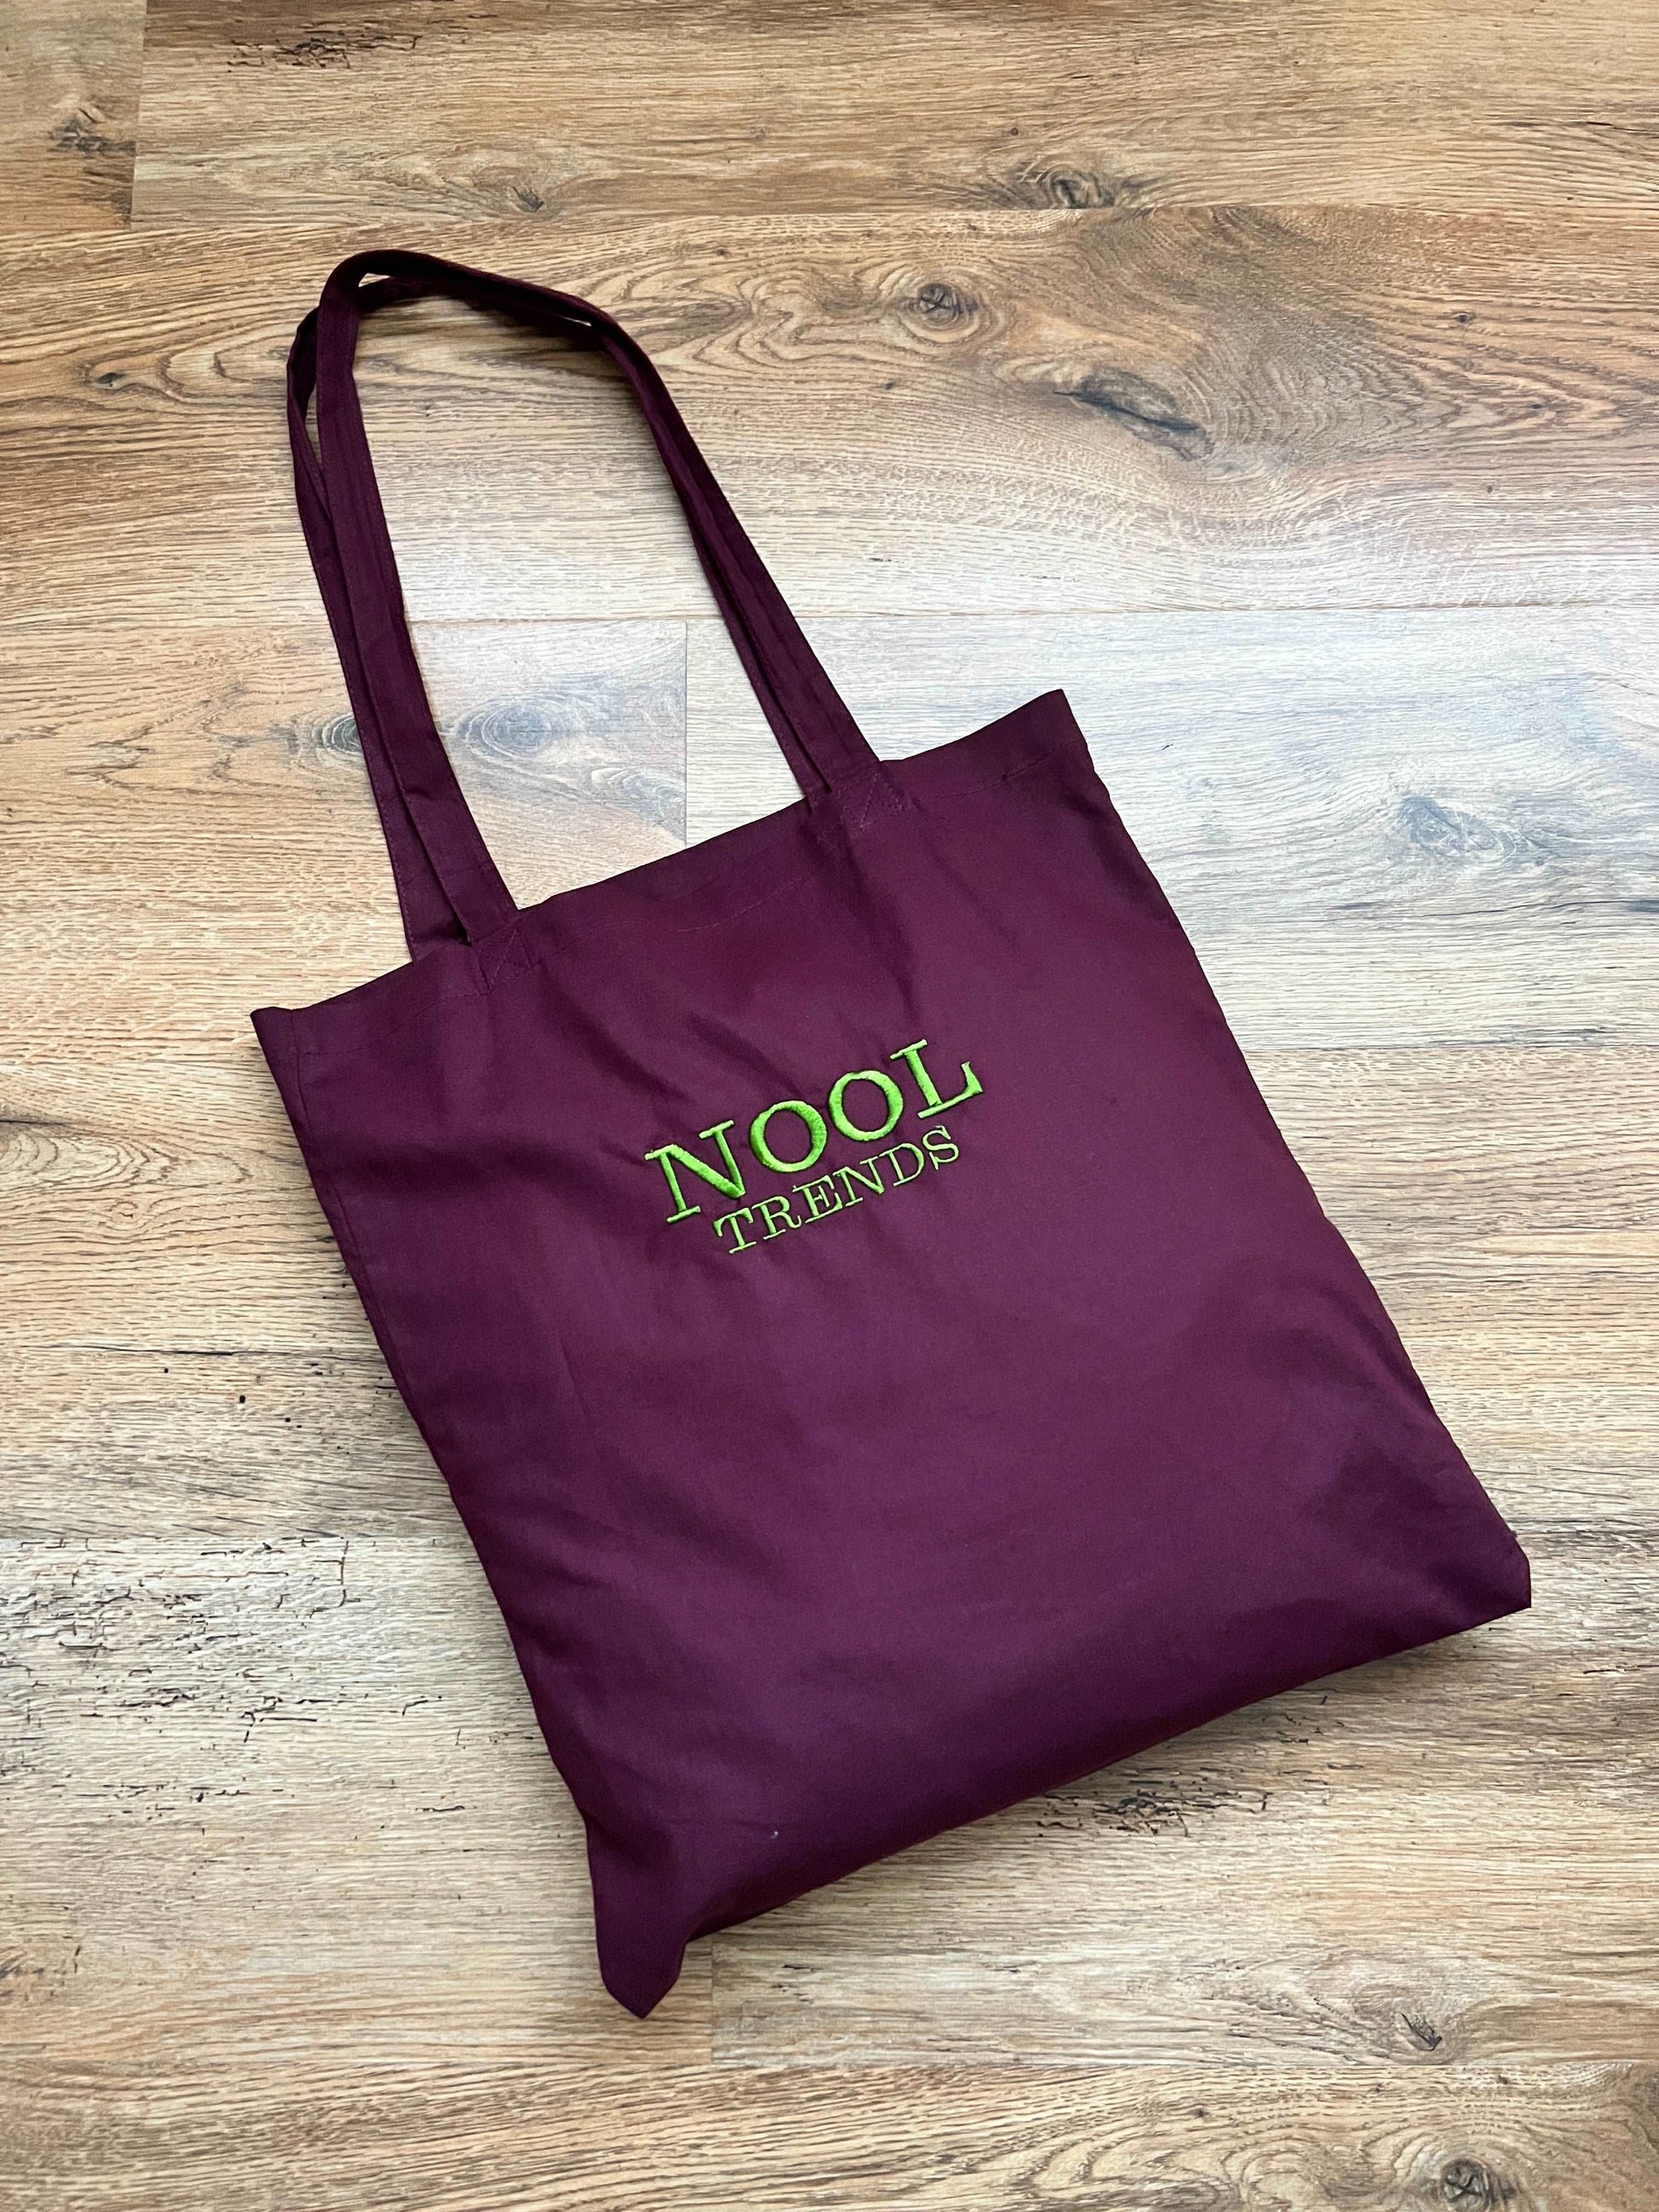  Nollia Women's Summer Tote Bag, Large Shoulder Bag +